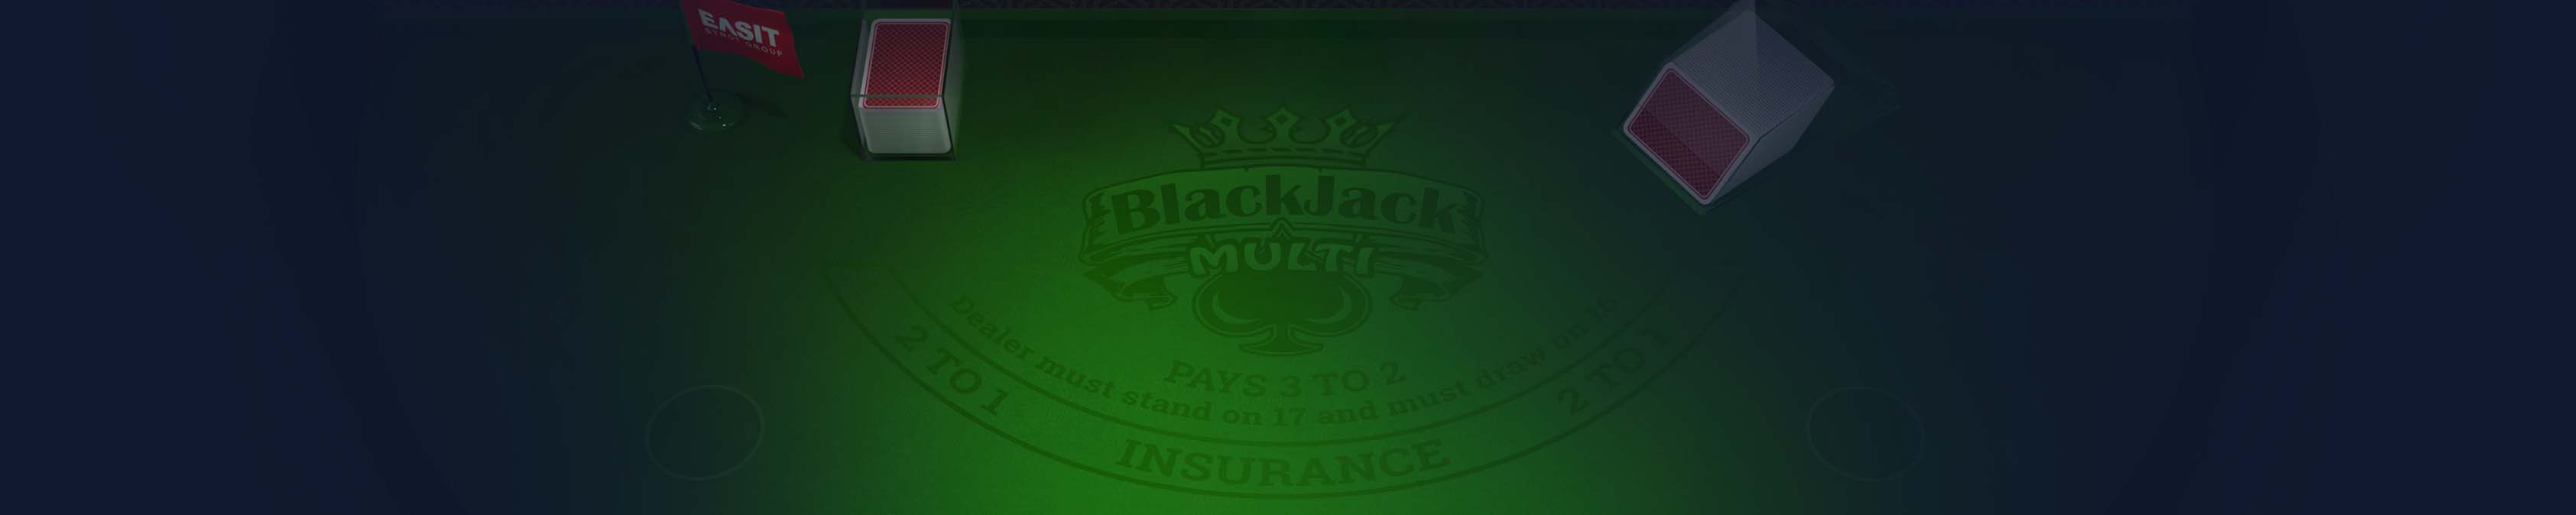 Blackjack Multi EASIT